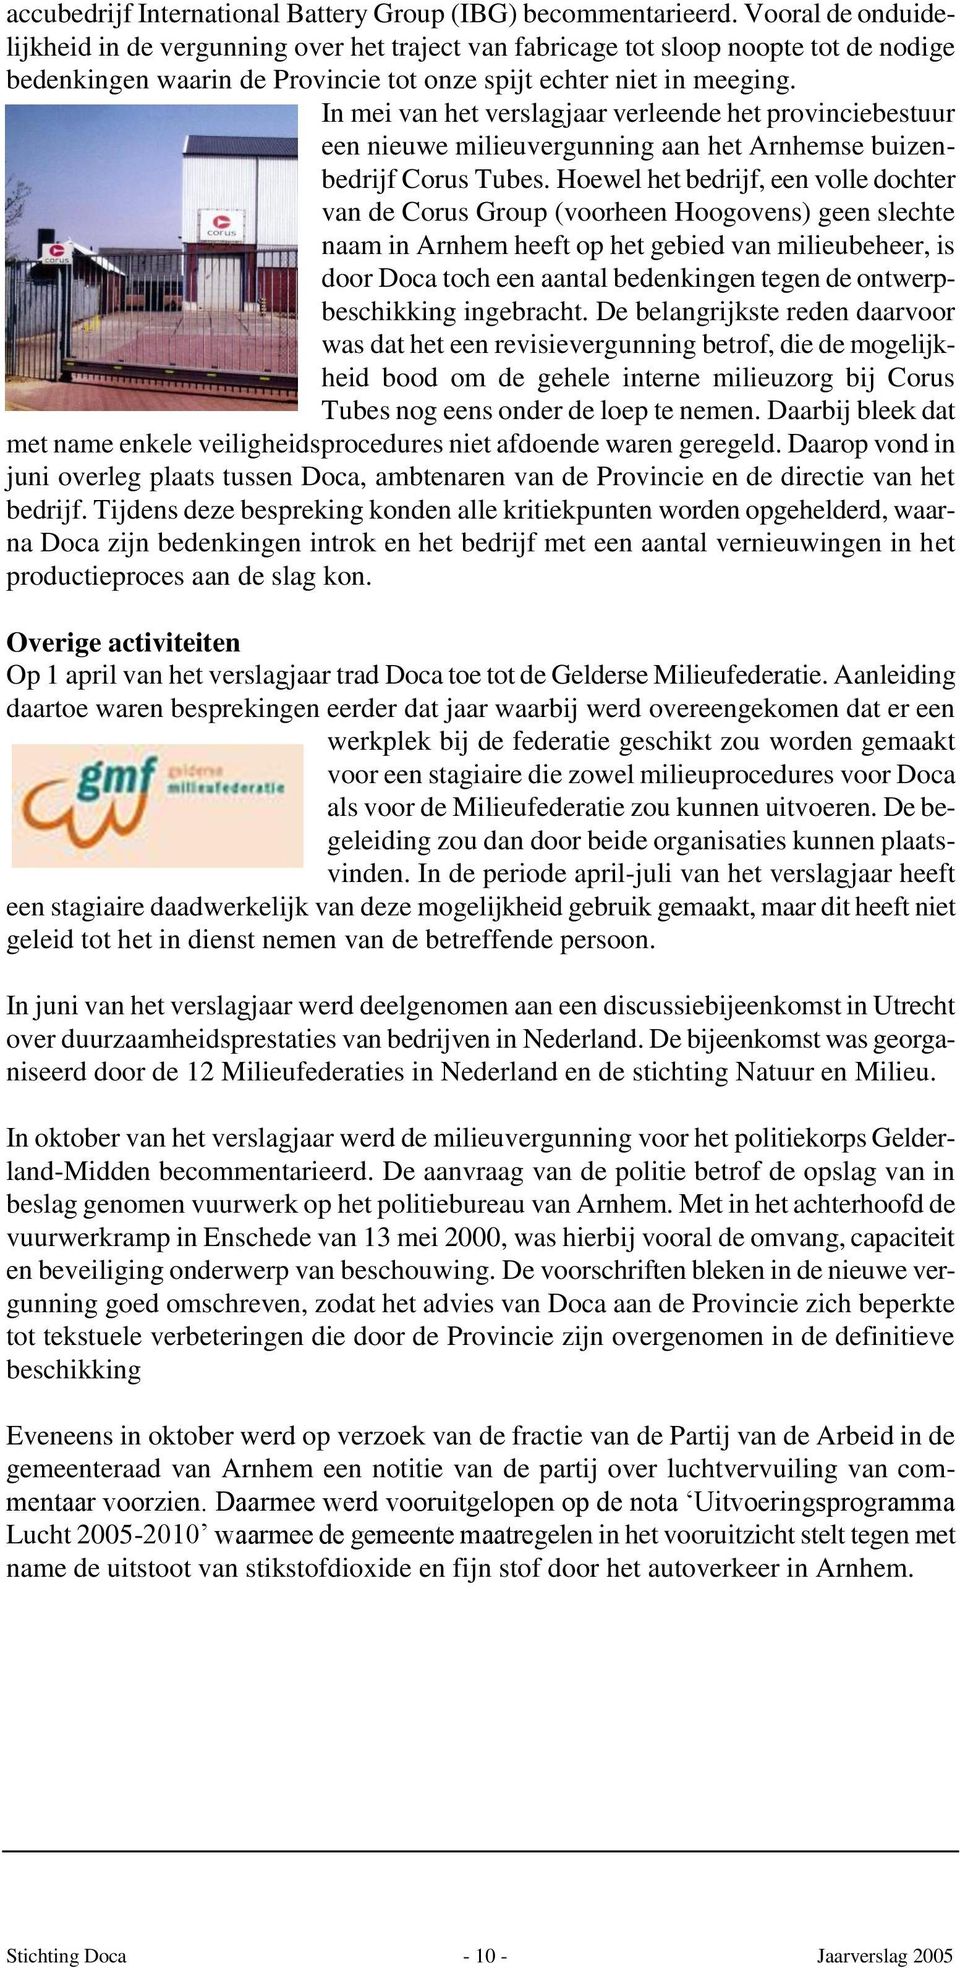 In mei van het verslagjaar verleende het provinciebestuur een nieuwe milieuvergunning aan het Arnhemse buizenbedrijf Corus Tubes.